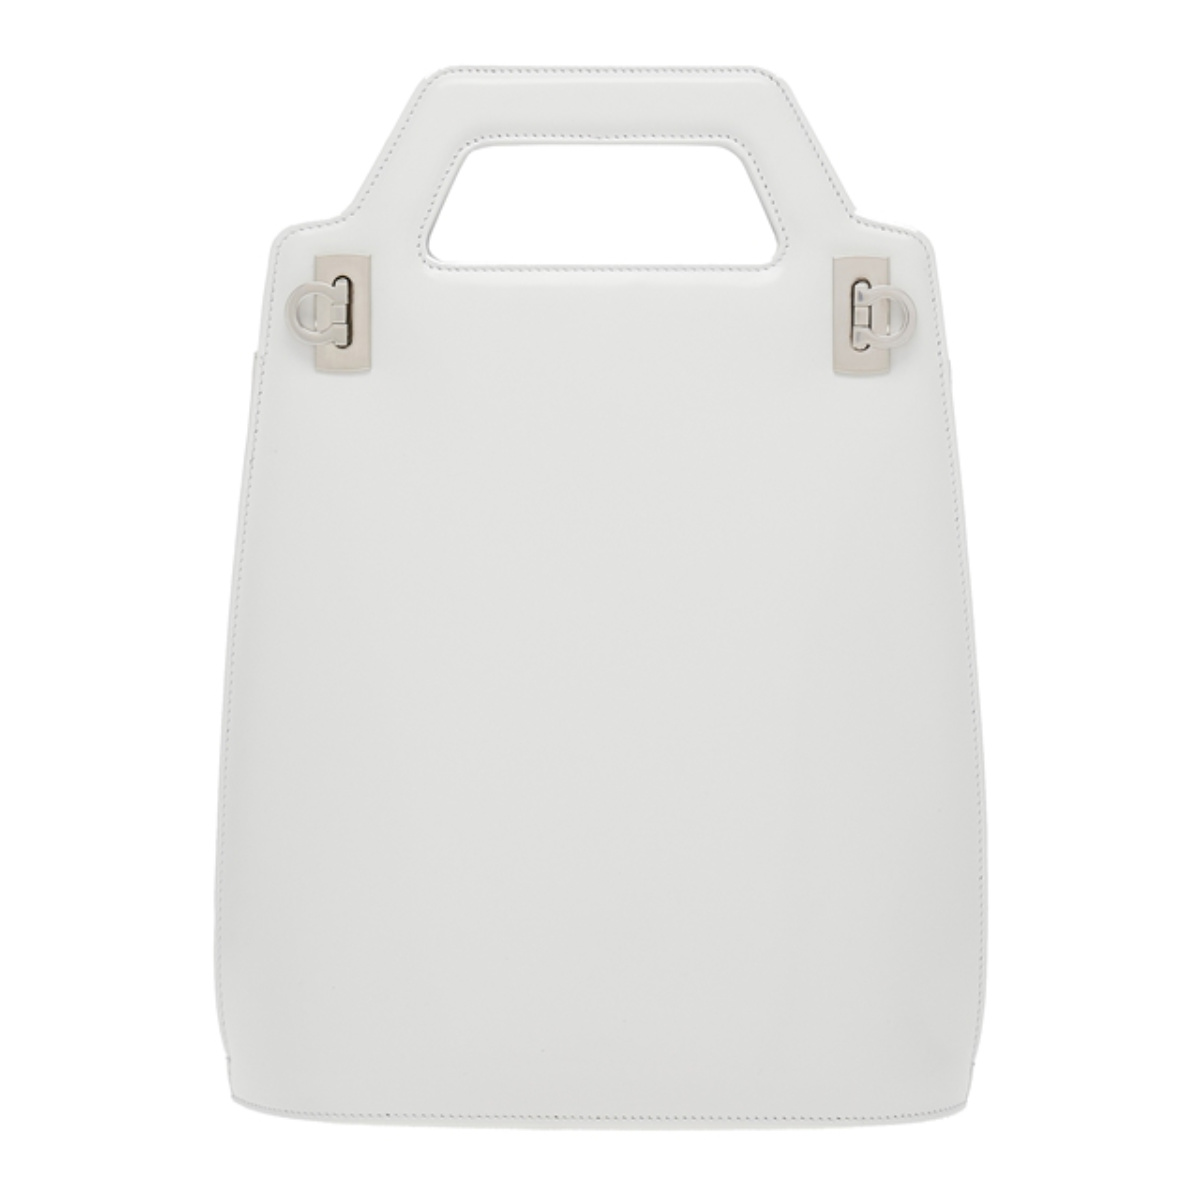 Ferragamo Presents Its New Wanda Bag For Spring Summer 2023